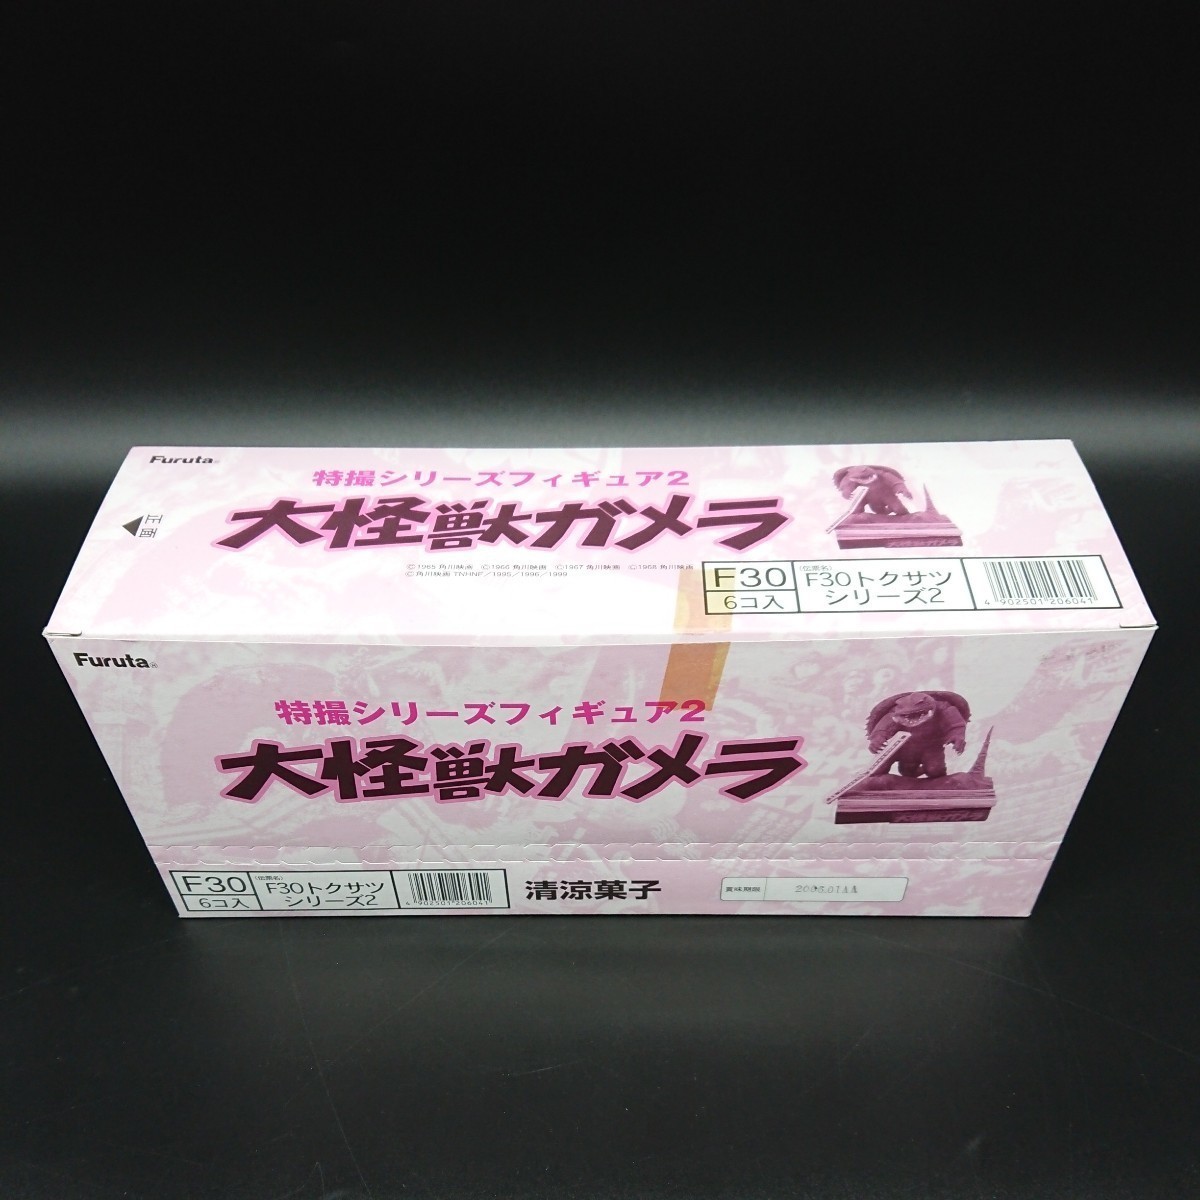 内袋未開封品 特撮シリーズフィギュア2 大怪獣ガメラ 1BOX (6個入り) 全7種+1(+彩色違い2種) フルコンプリート Furutaの画像1